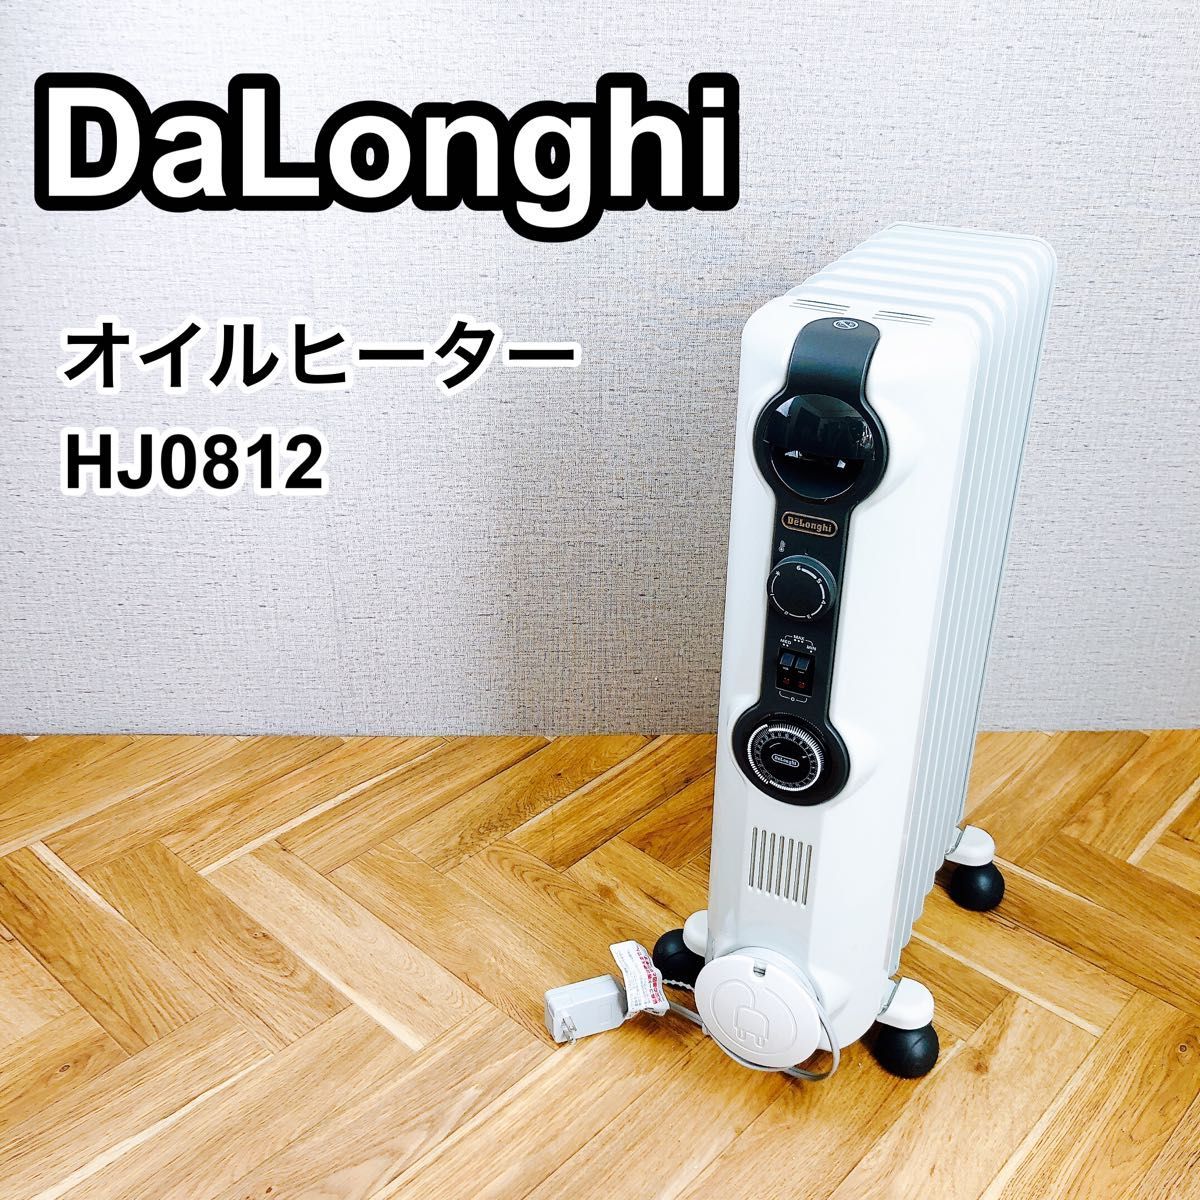 DeLonghi デロンギオイルヒーター HJ0812